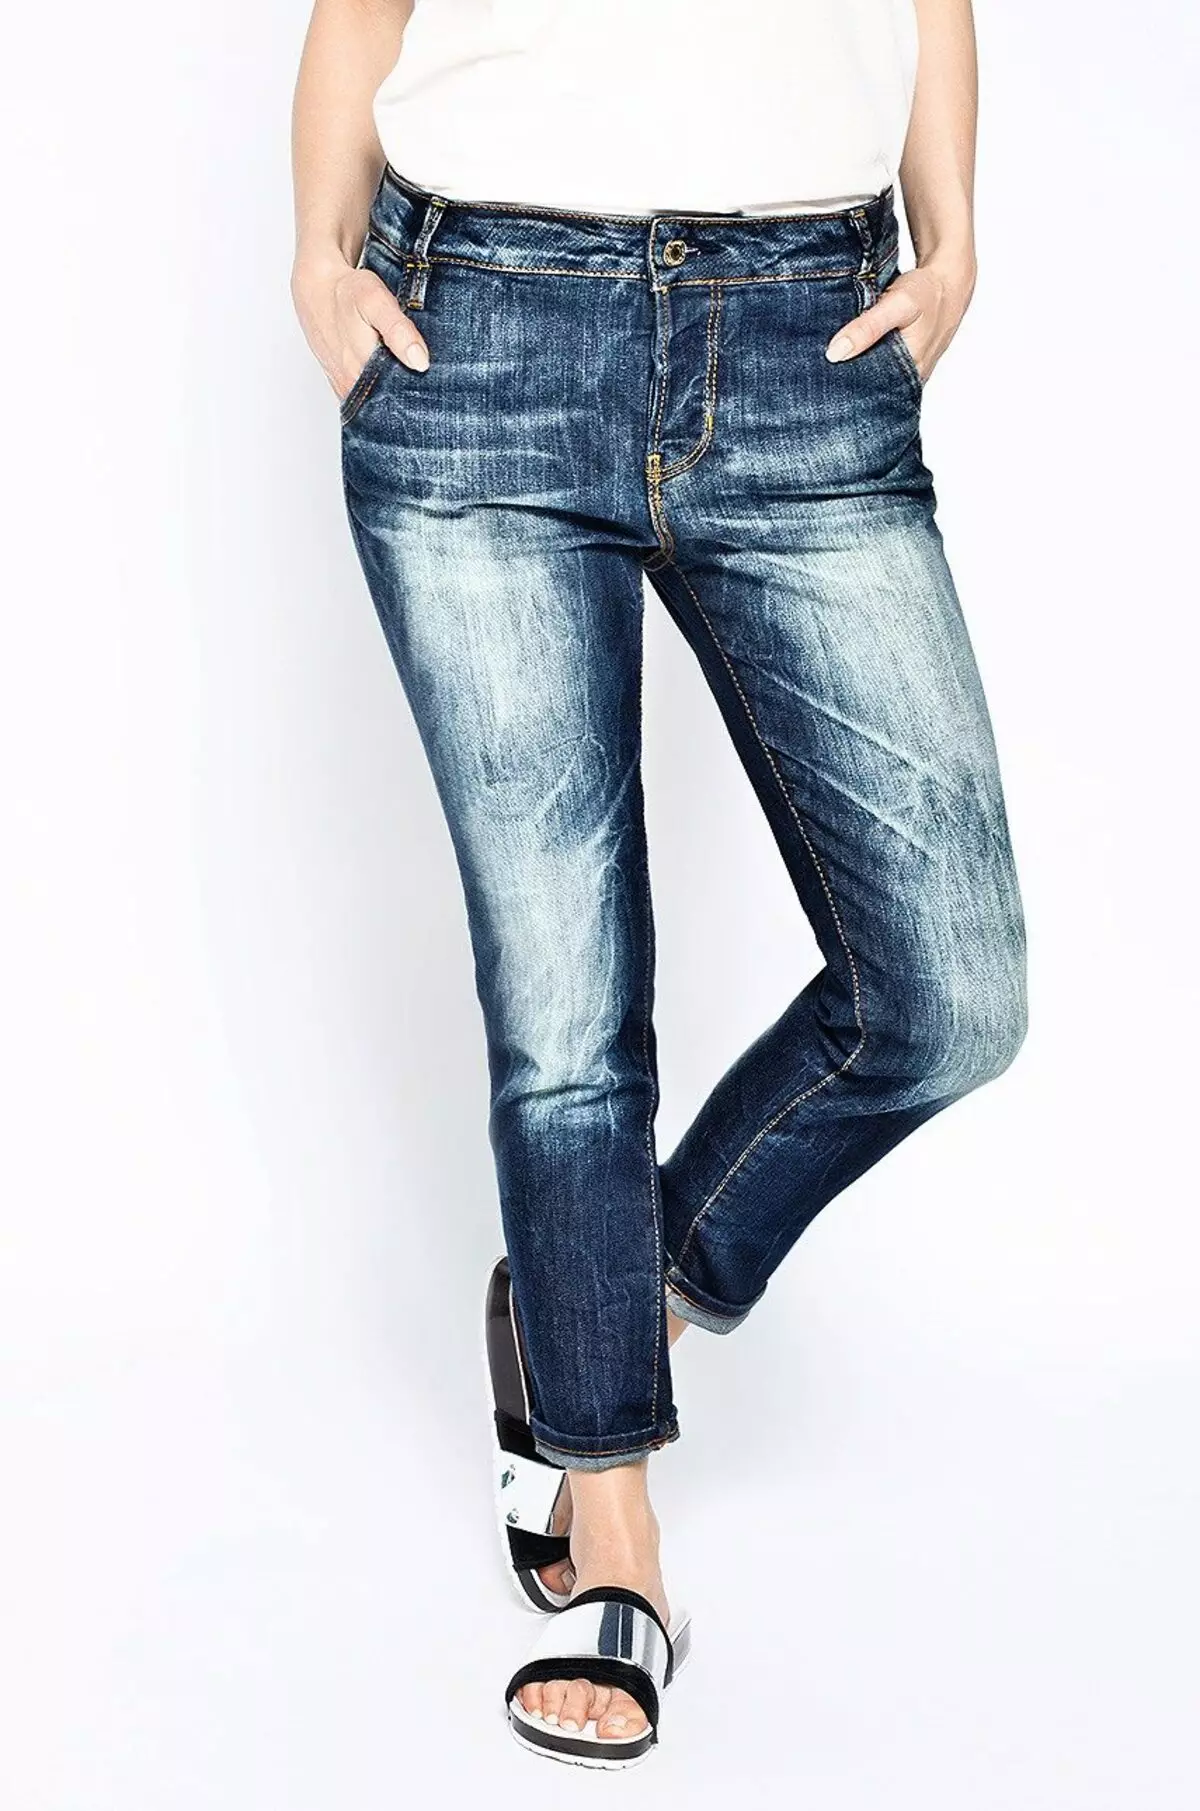 I-LEE Jeans (iifoto ezingama-52): Iimodeli zabasetyhini, indlela yokwahlulahlula i-vil 1091_20